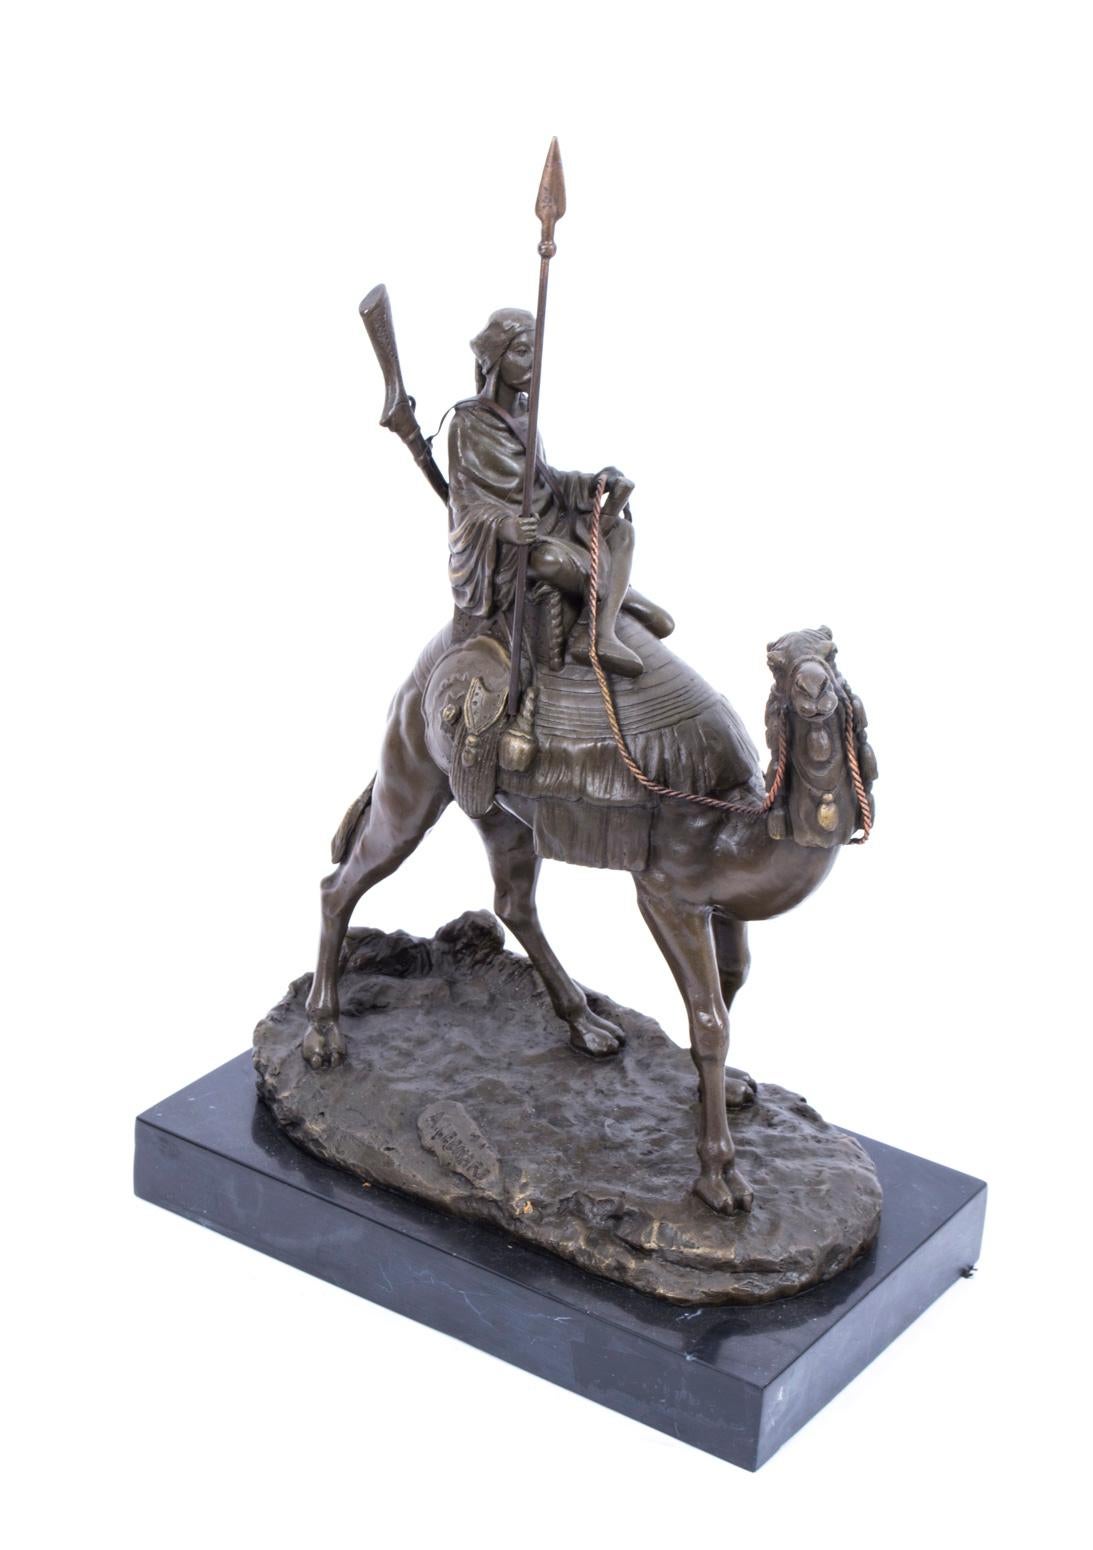 Il s'agit d'une sculpture en bronze représentant un guerrier bédouin armé d'une lance et d'un fusil, chevauchant son navire du désert, datant de la fin du XXe siècle.
Ce bronze massif coulé à chaud de haute qualité a été produit selon le procédé